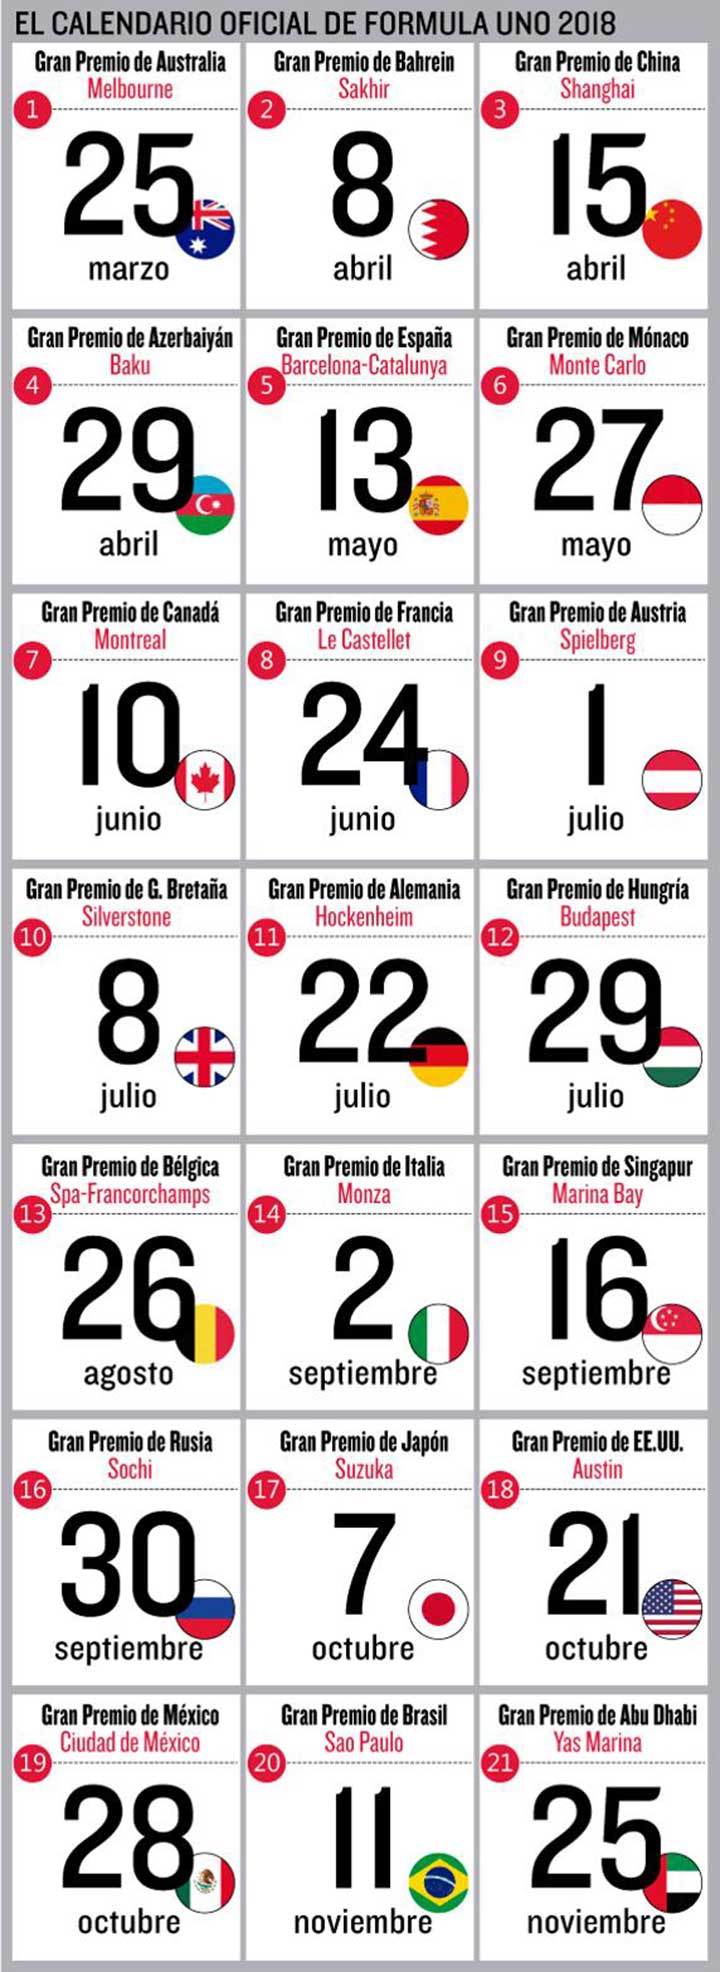 Calendario Oficial de la Formula 1 2018